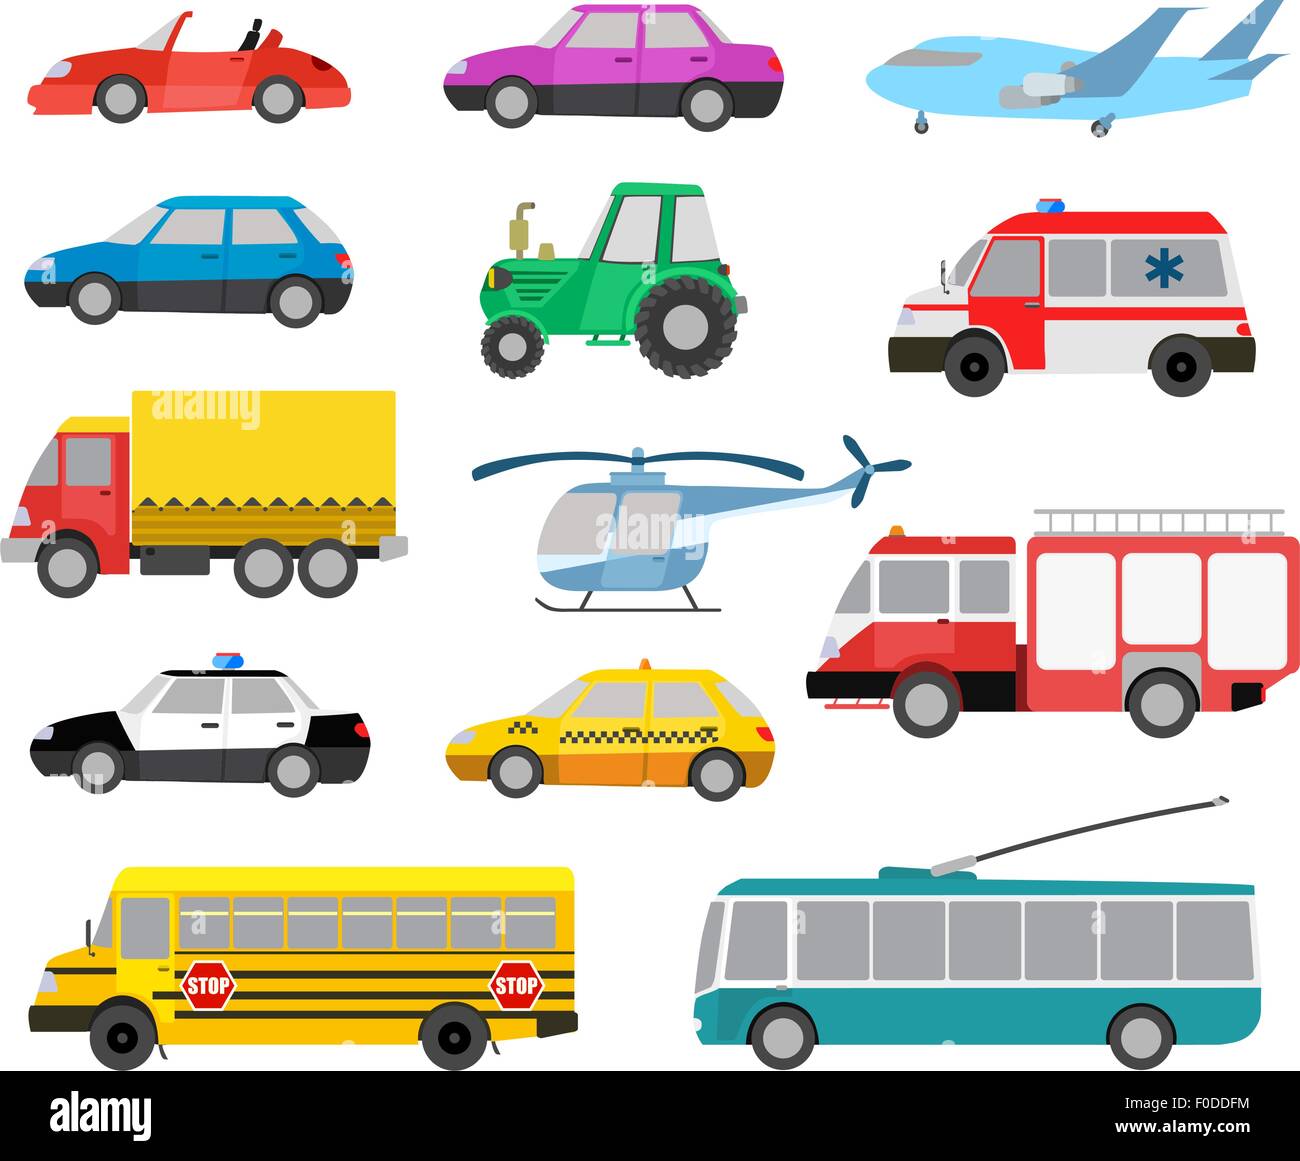 Satz von niedlichen Cartoon-Autos und Fahrzeuge. Vektor-illustration Stock Vektor